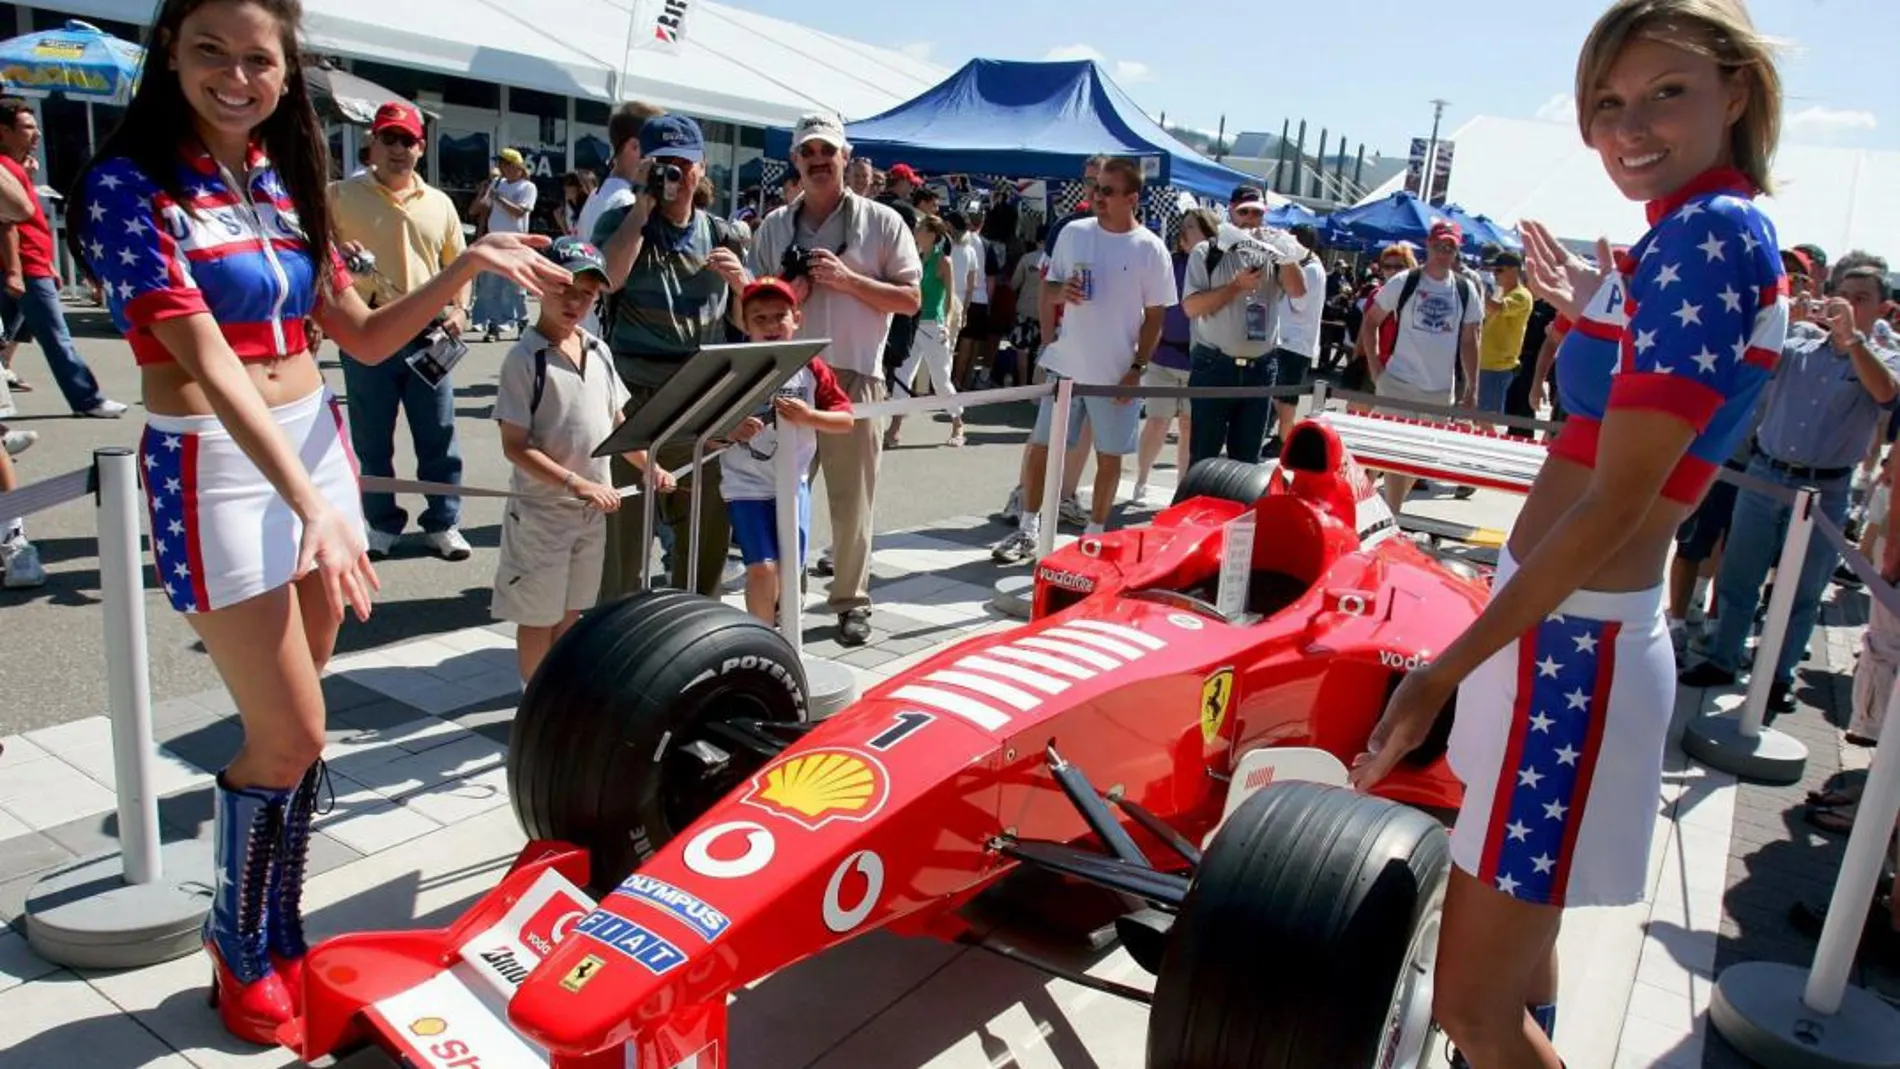 Unas azafatas posan junto a Ferrari en el circuito de Indianápolis/Efe